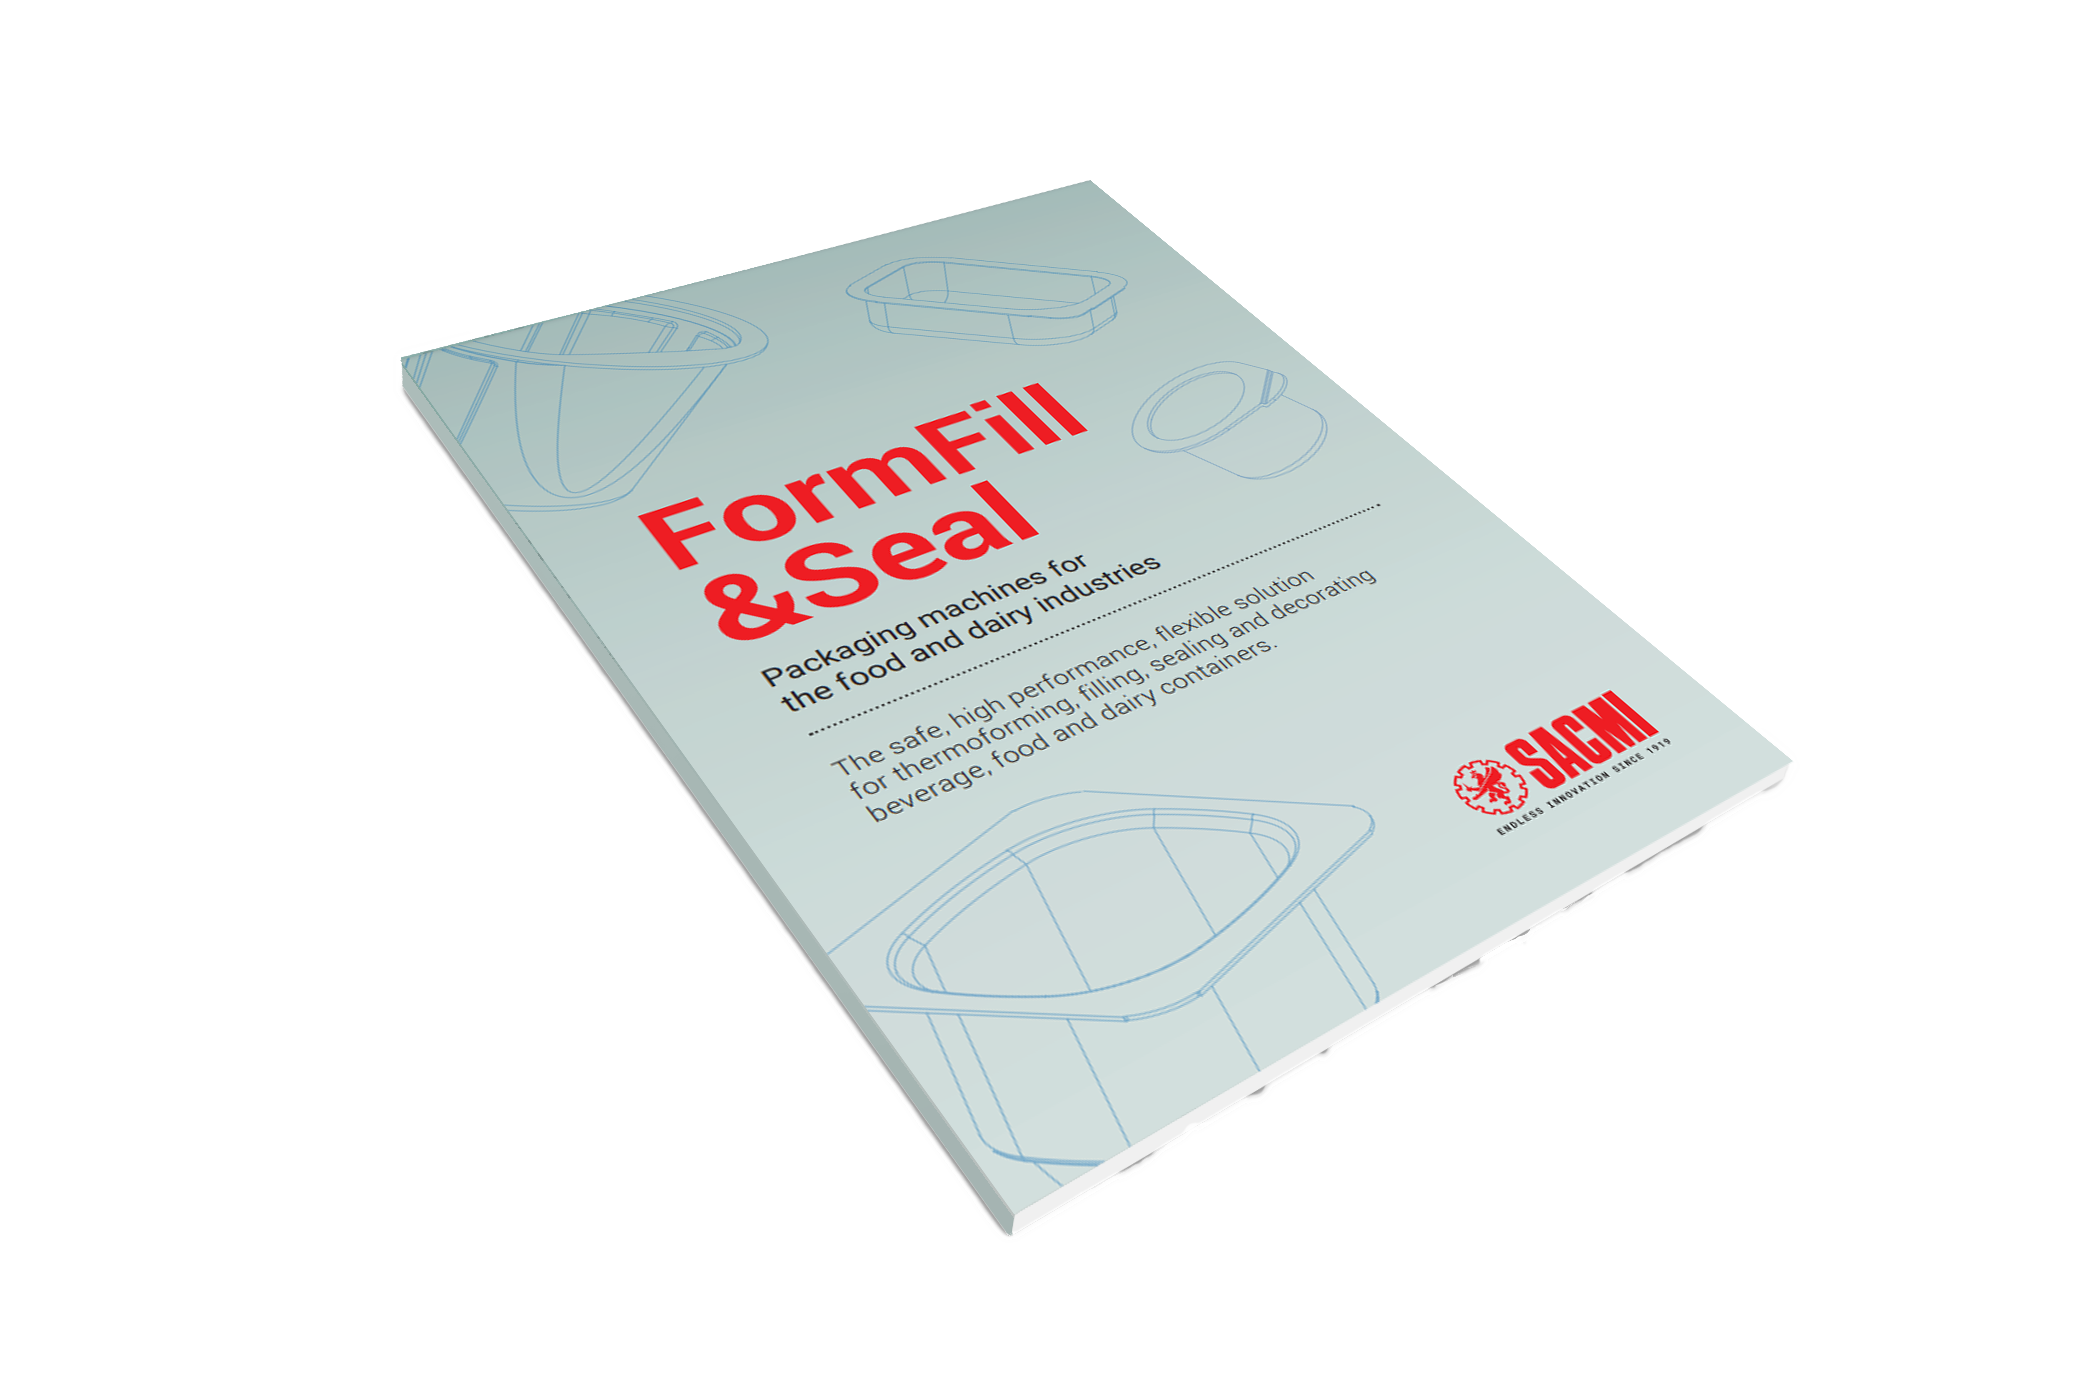 FormFill&Seal